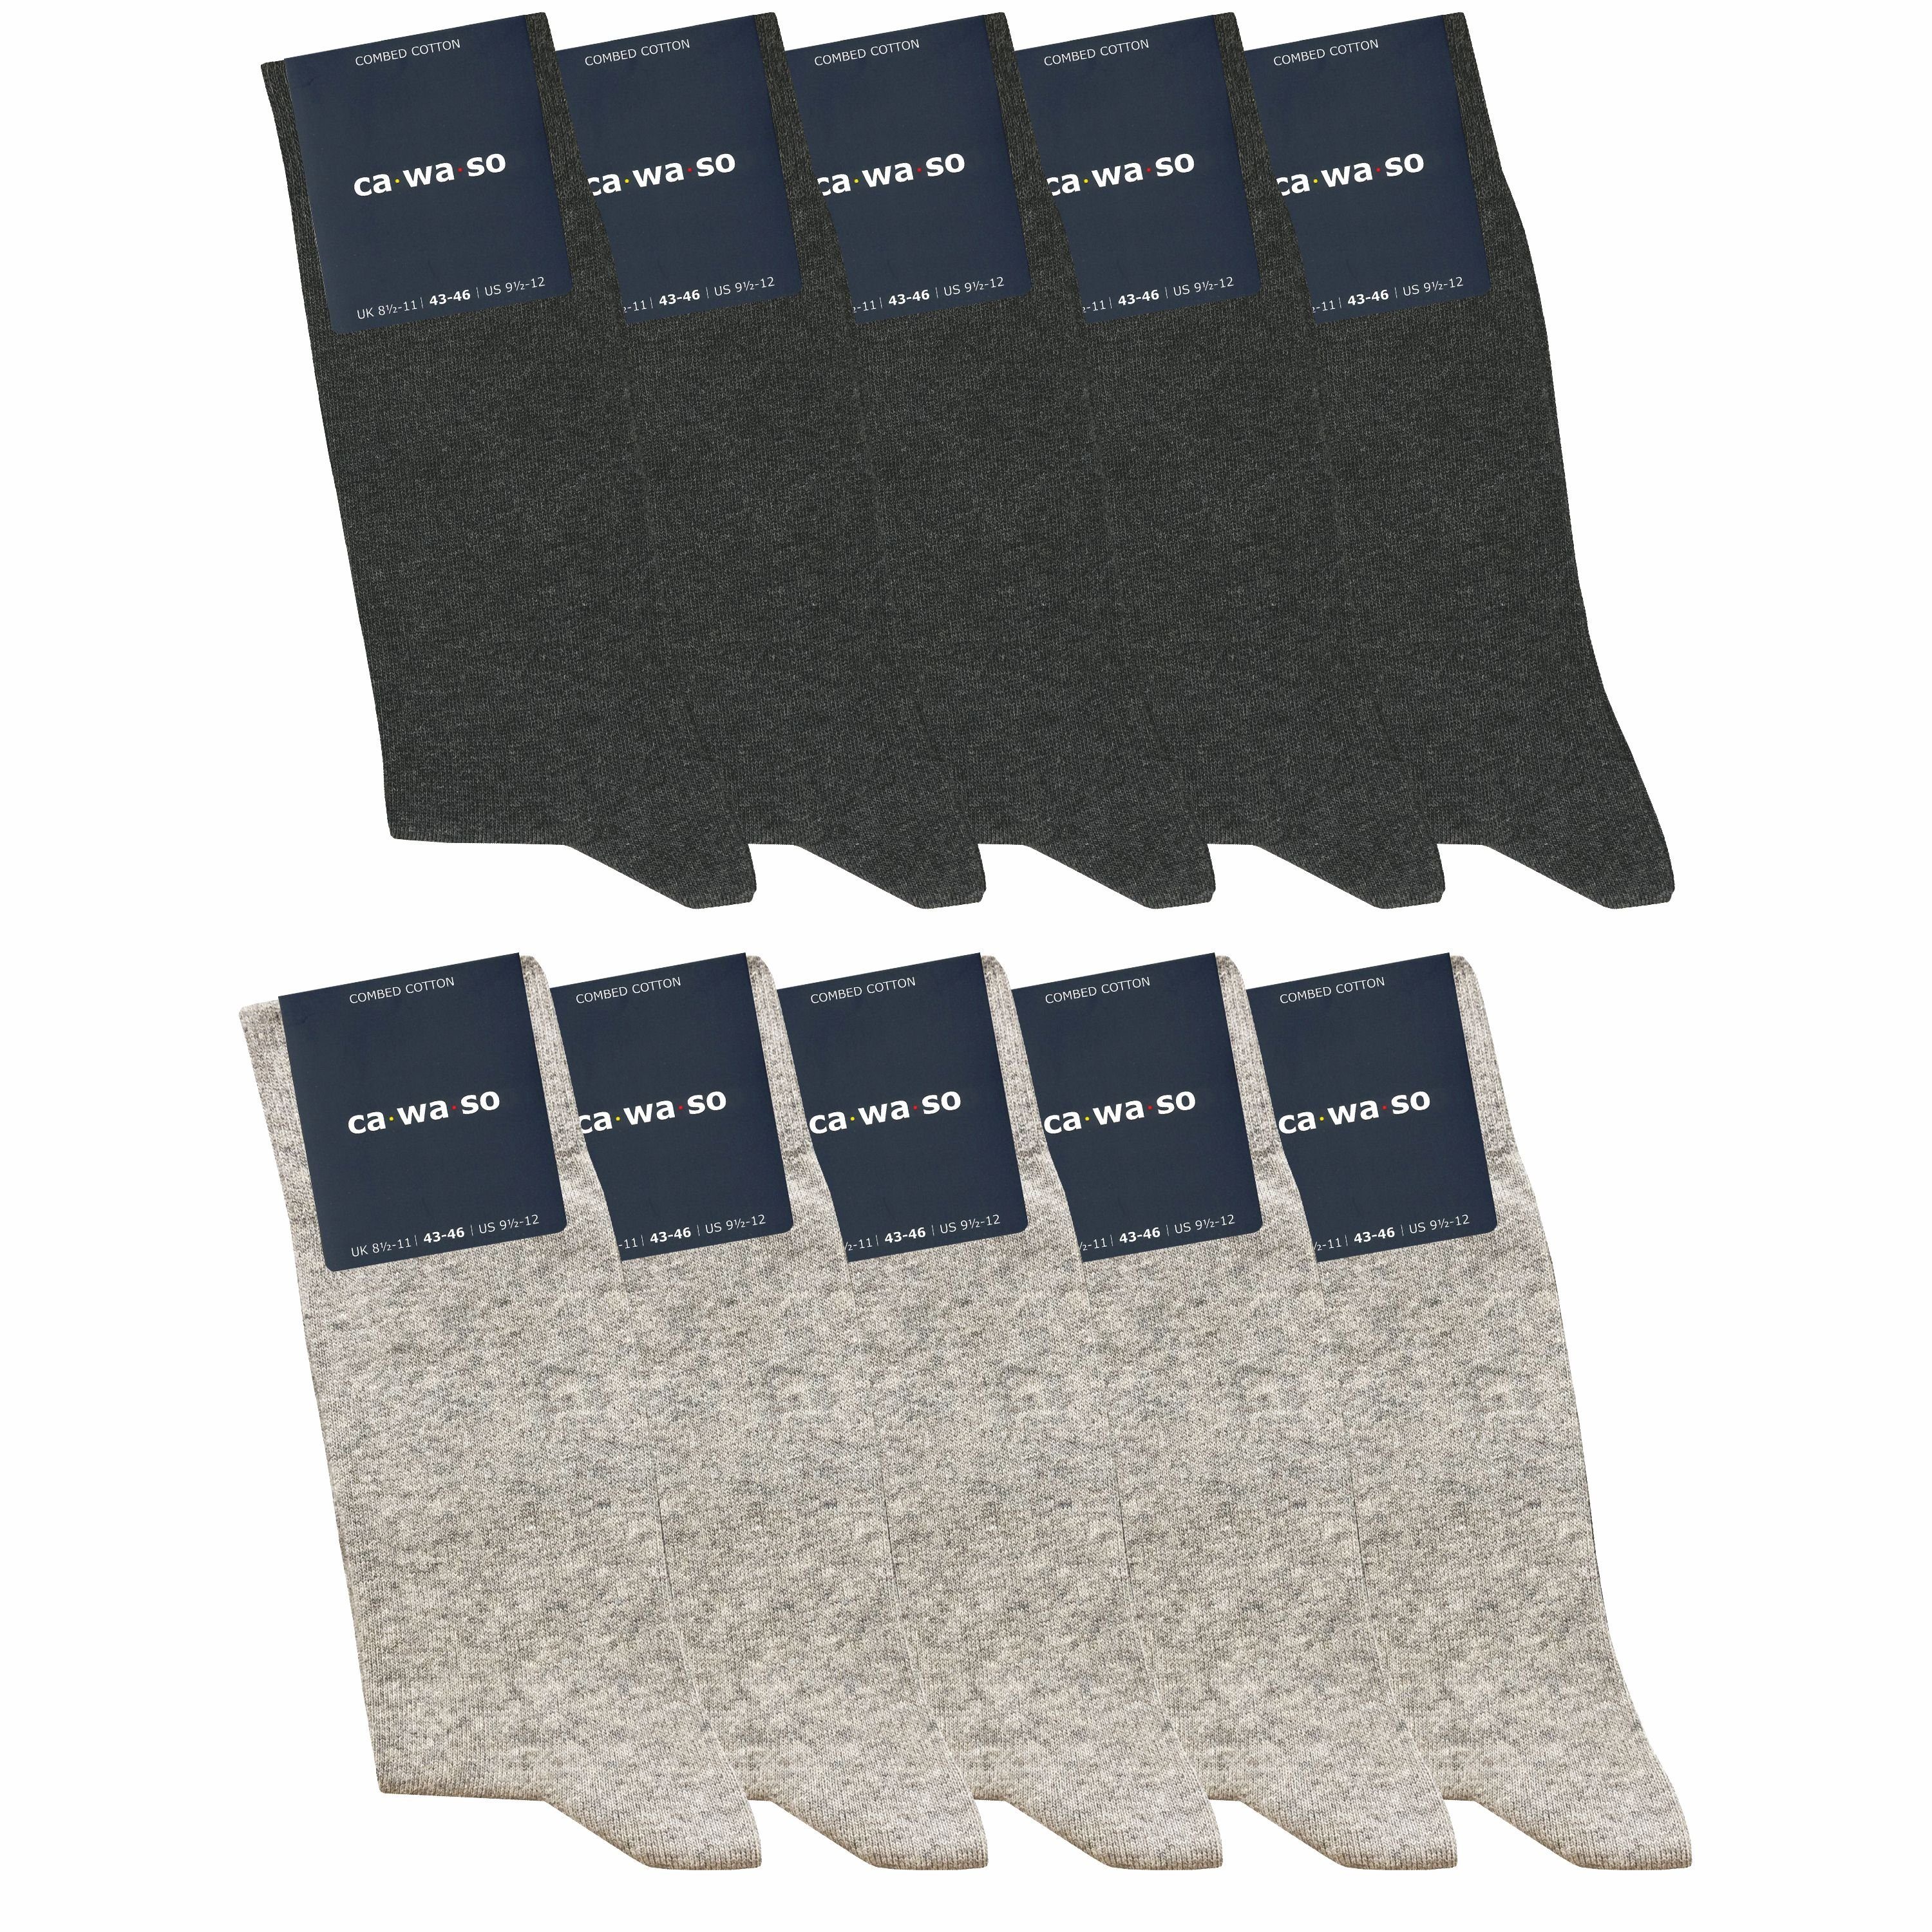 Baumwolle grau grau, Damen Herren gekämmter und doppelt - weich Socken & bequem & weiteren Farben für - in schwarz, & bunt, ca·wa·so blau hellgrau (10 Socken aus Paar)